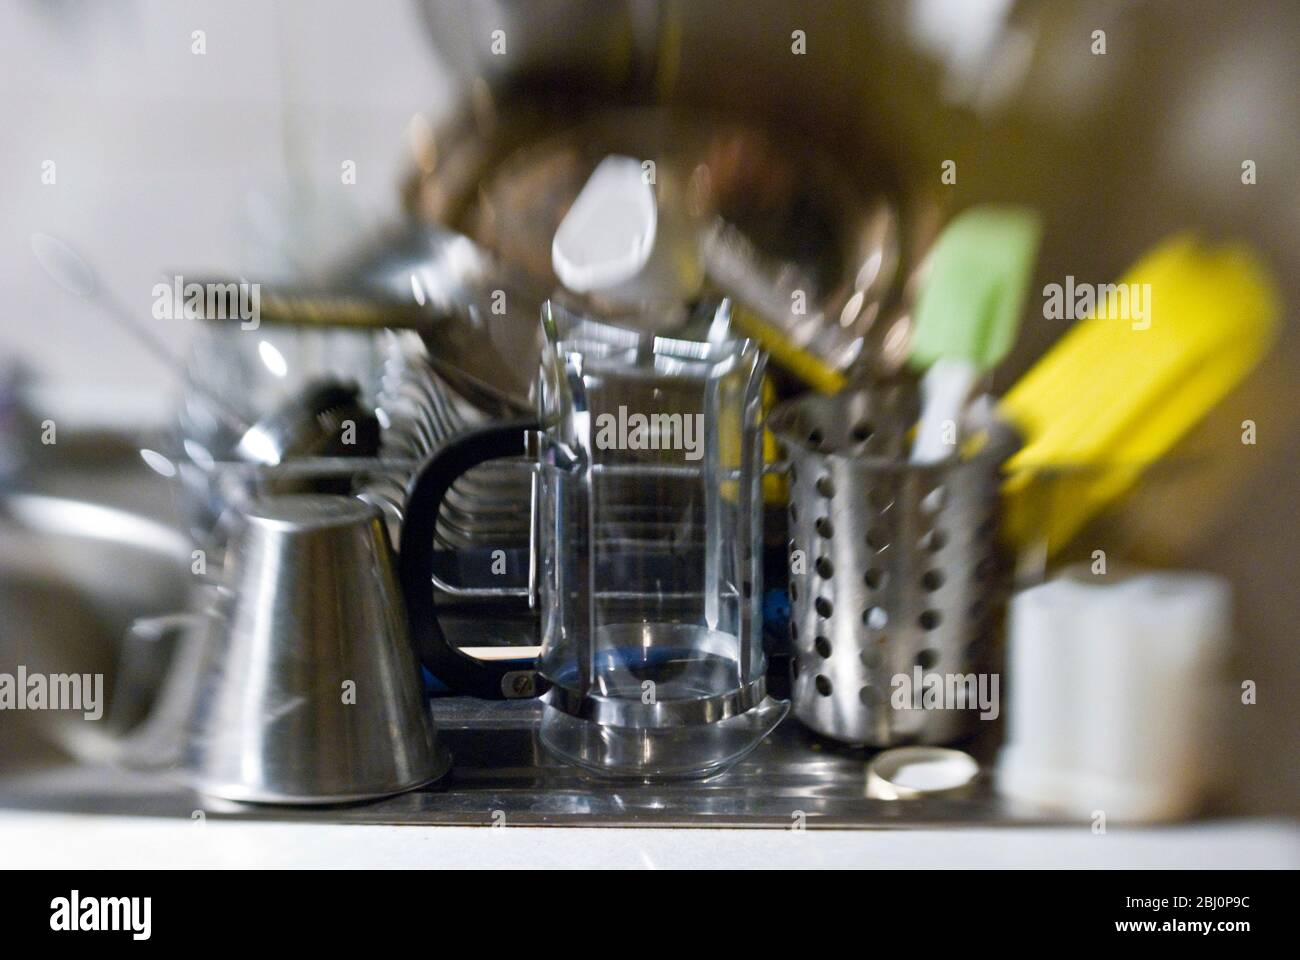 Lavaggio in su accatastato in scolapiatti su bordo di drenaggio del lavello della cucina. Ripresa con lente lensbaby per un effetto sfocato - Foto Stock